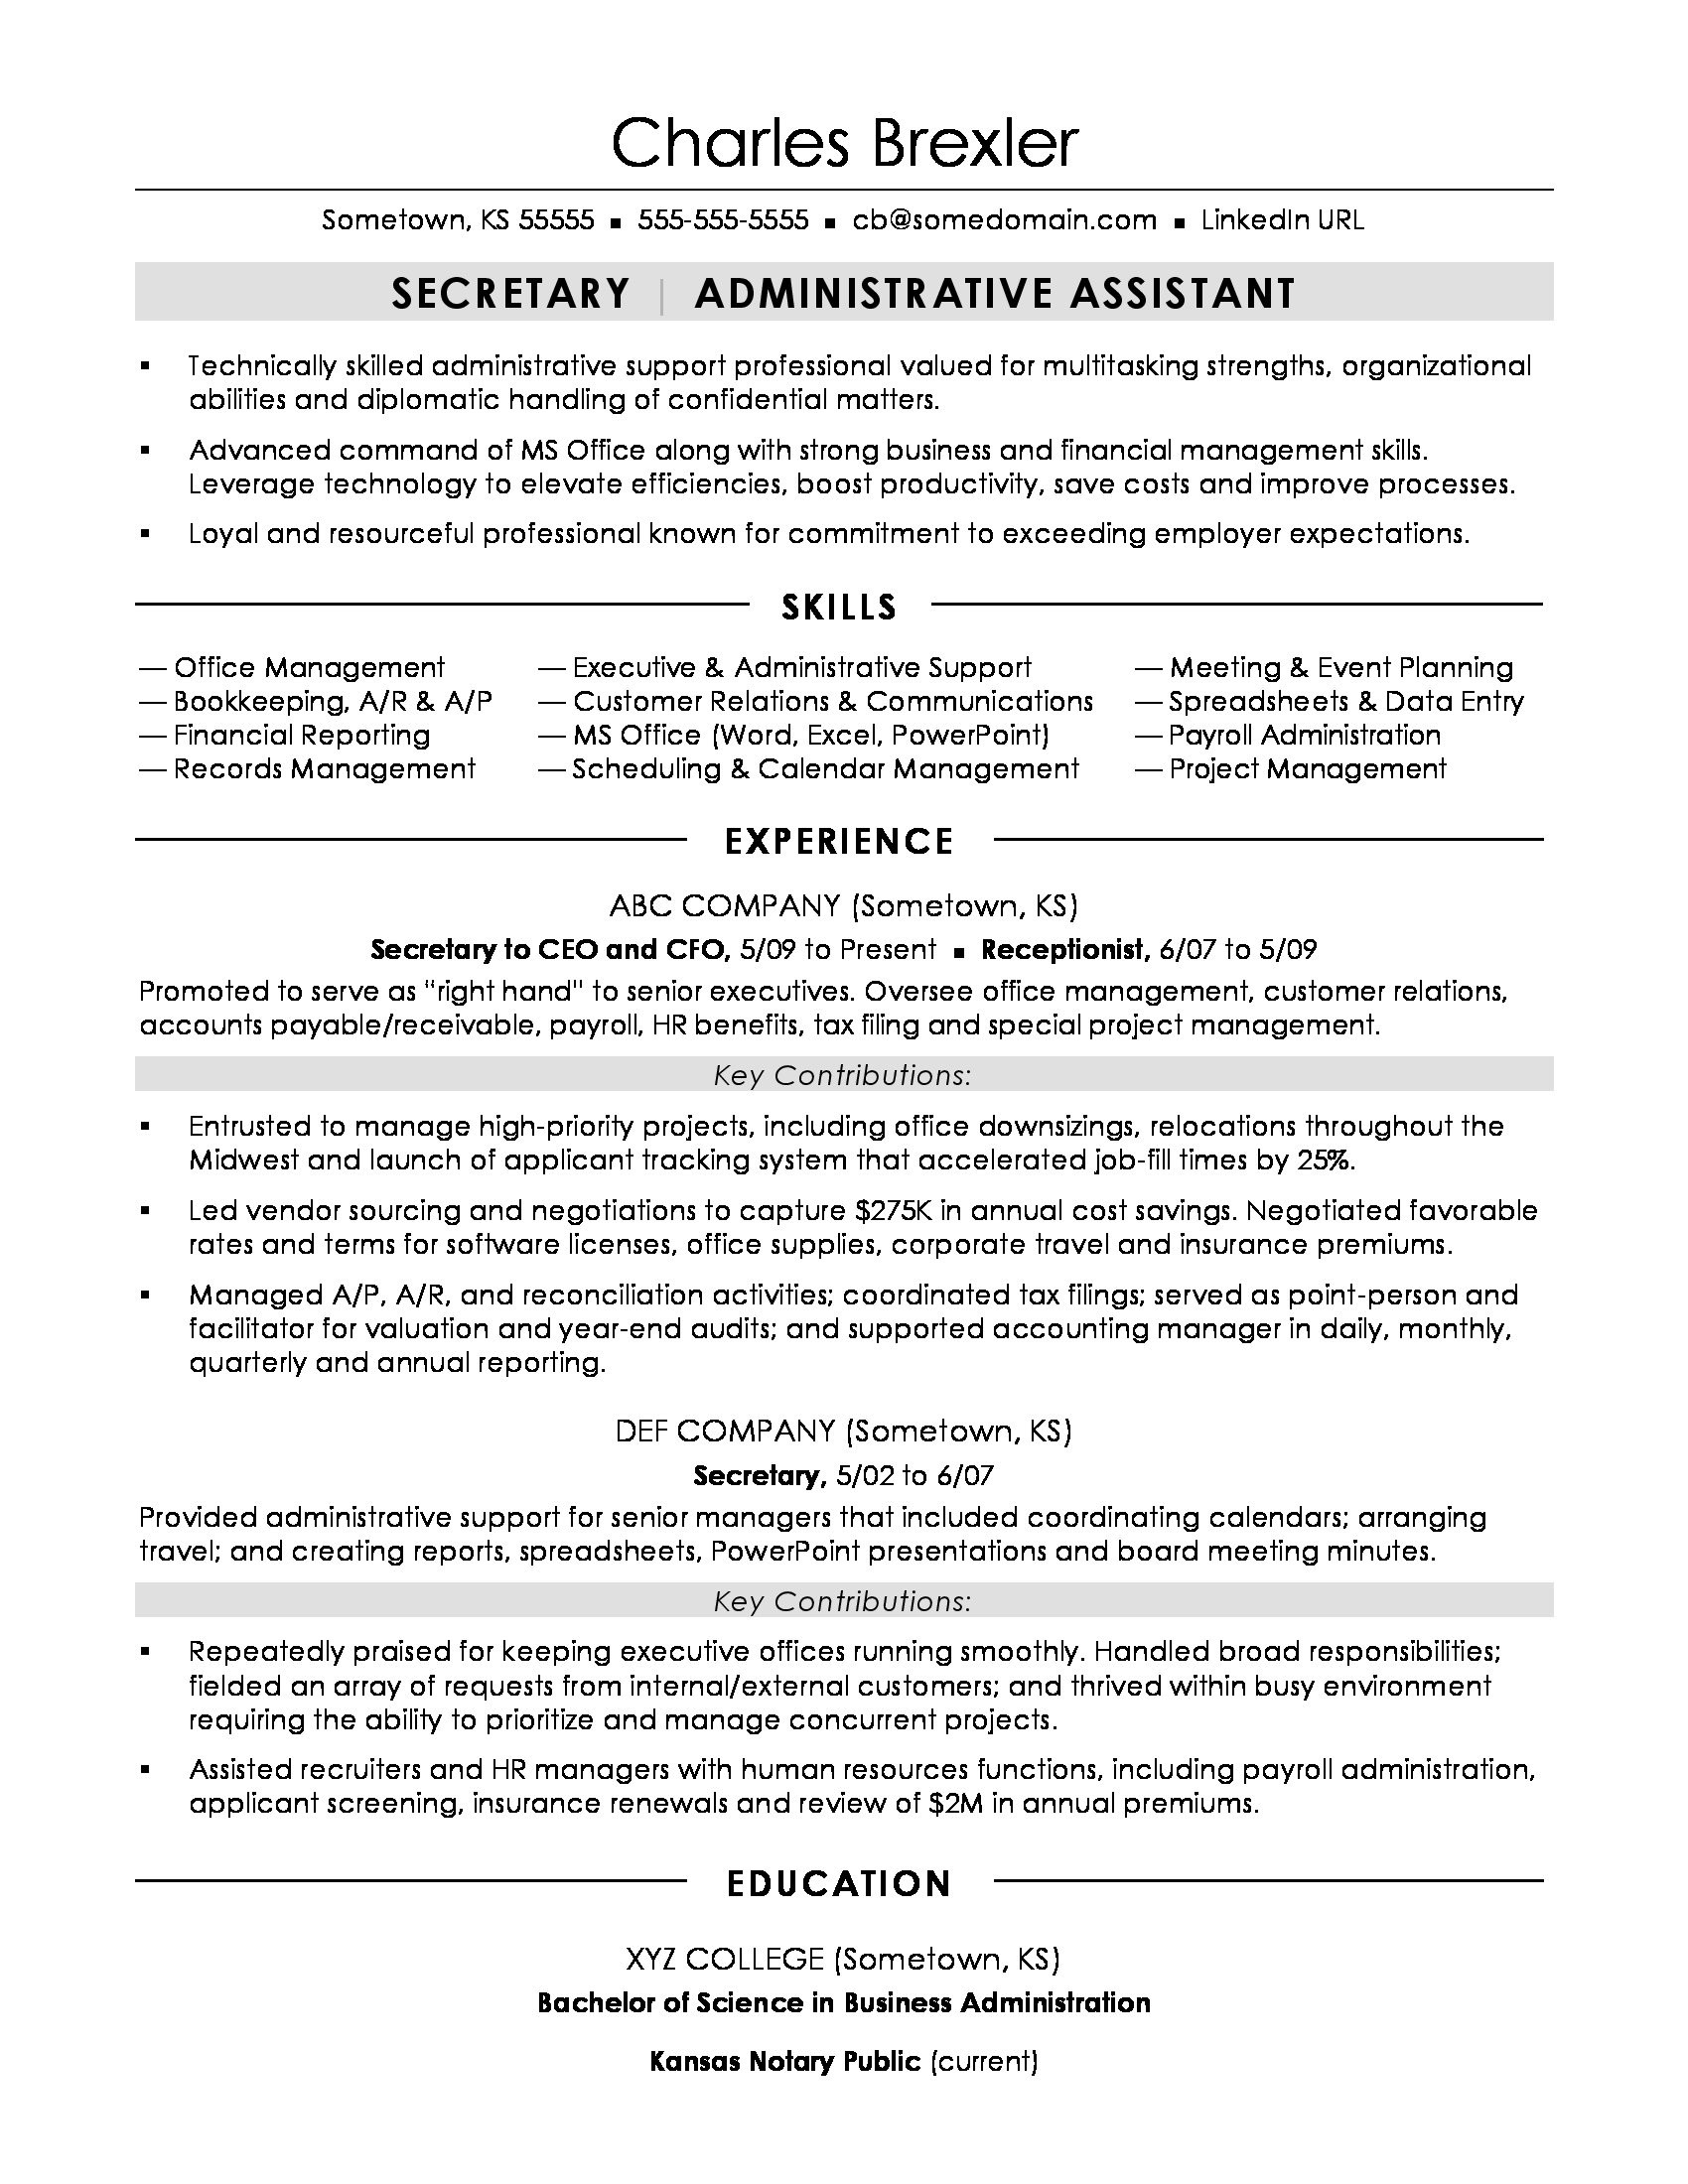 Sample Resume for School Office assistant Secretary Resume Sample Monster.com